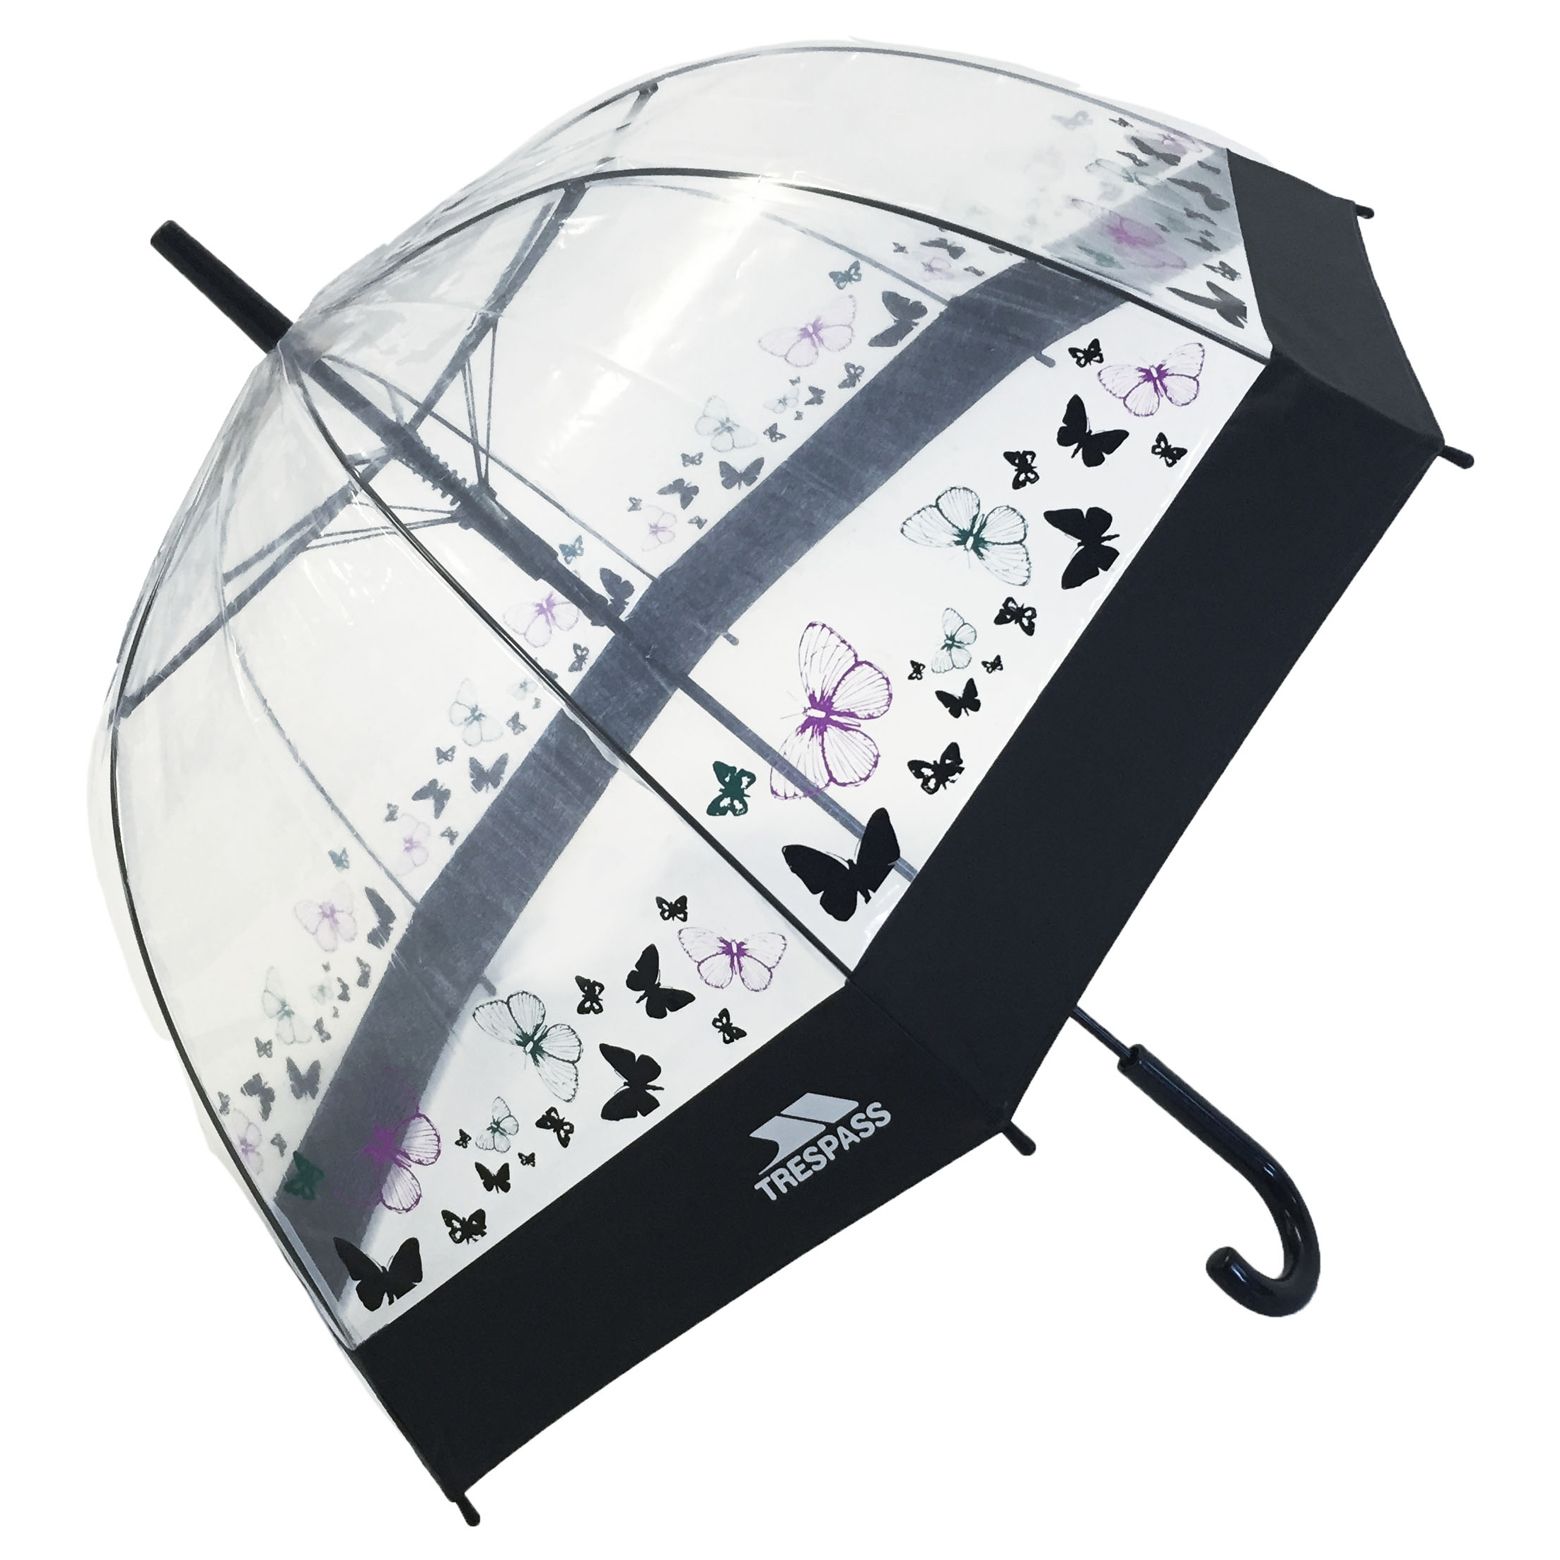 Printed Bubble Umbrella